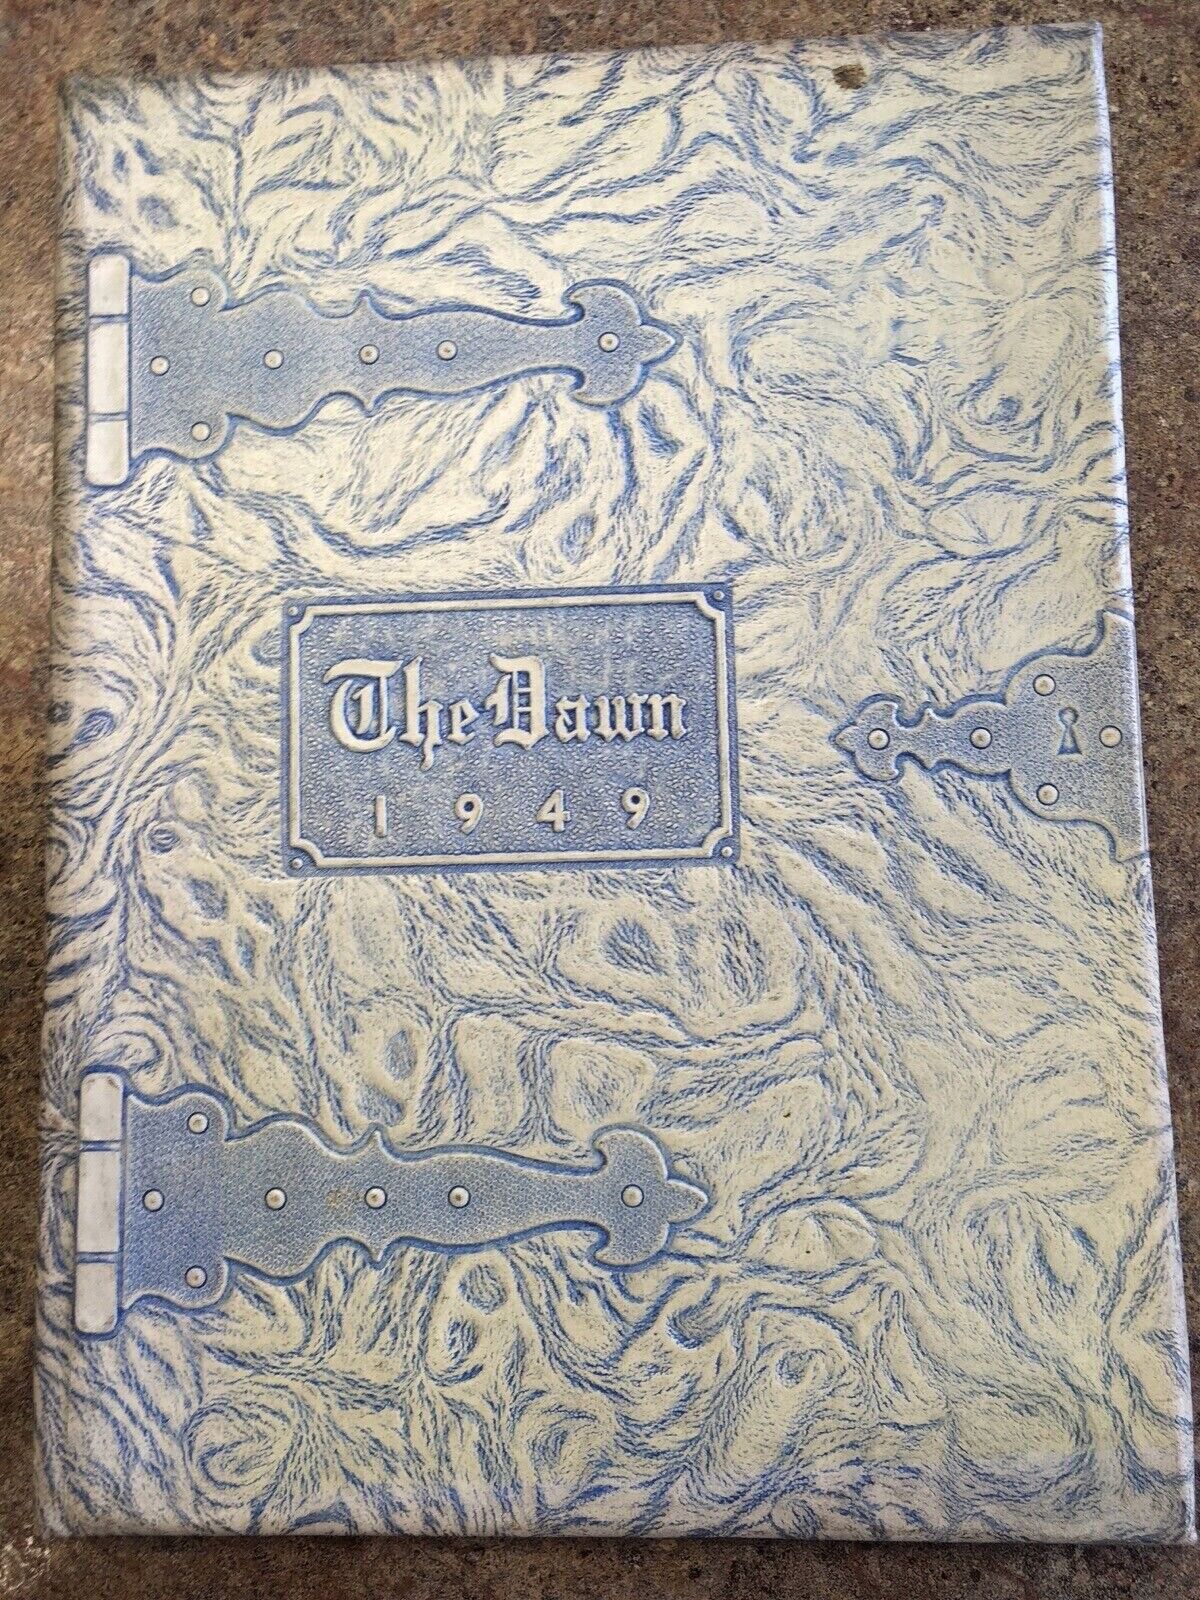 1949 Brockway Snyder High School yearbook, Brockway, PA, The Dawn, No Writing